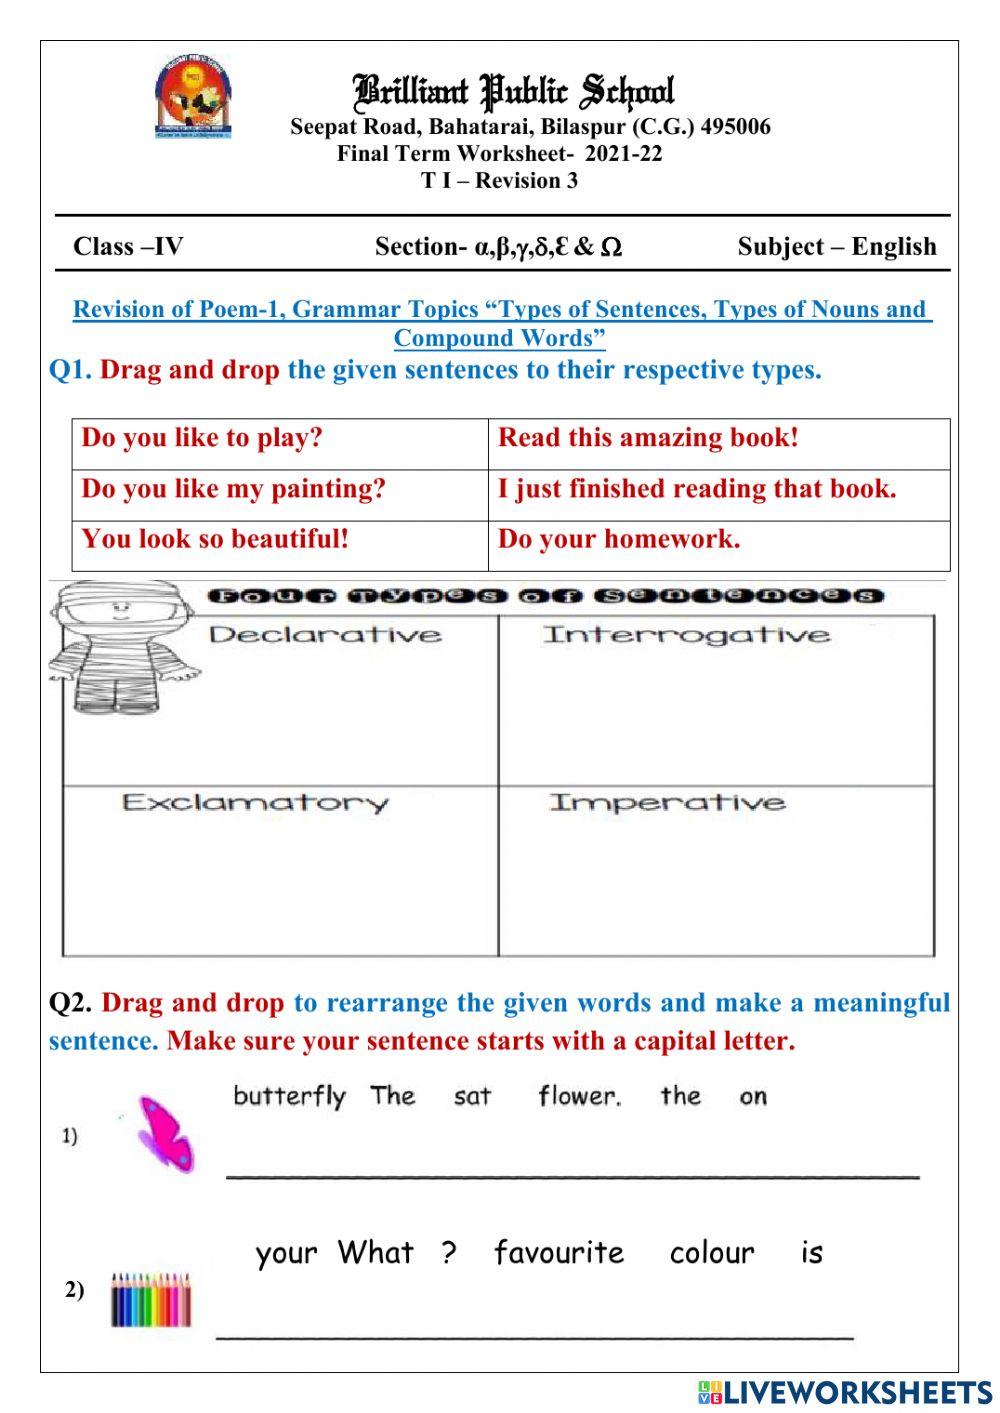 Class 4 T1 Ch-1 Grammar Topics